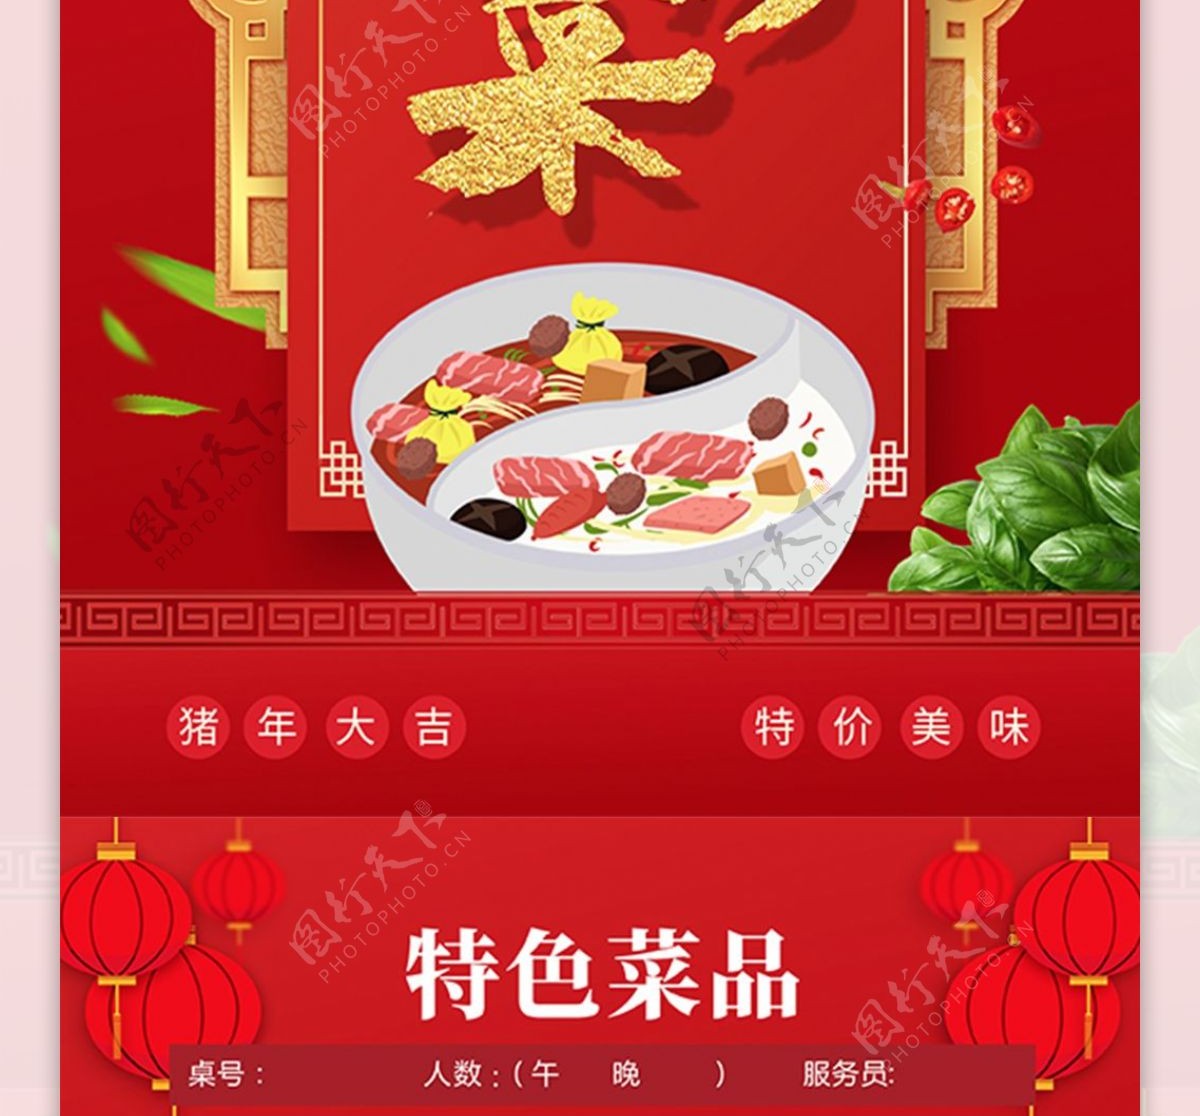 红色喜庆饭店美味私房菜特色菜菜单宣传单